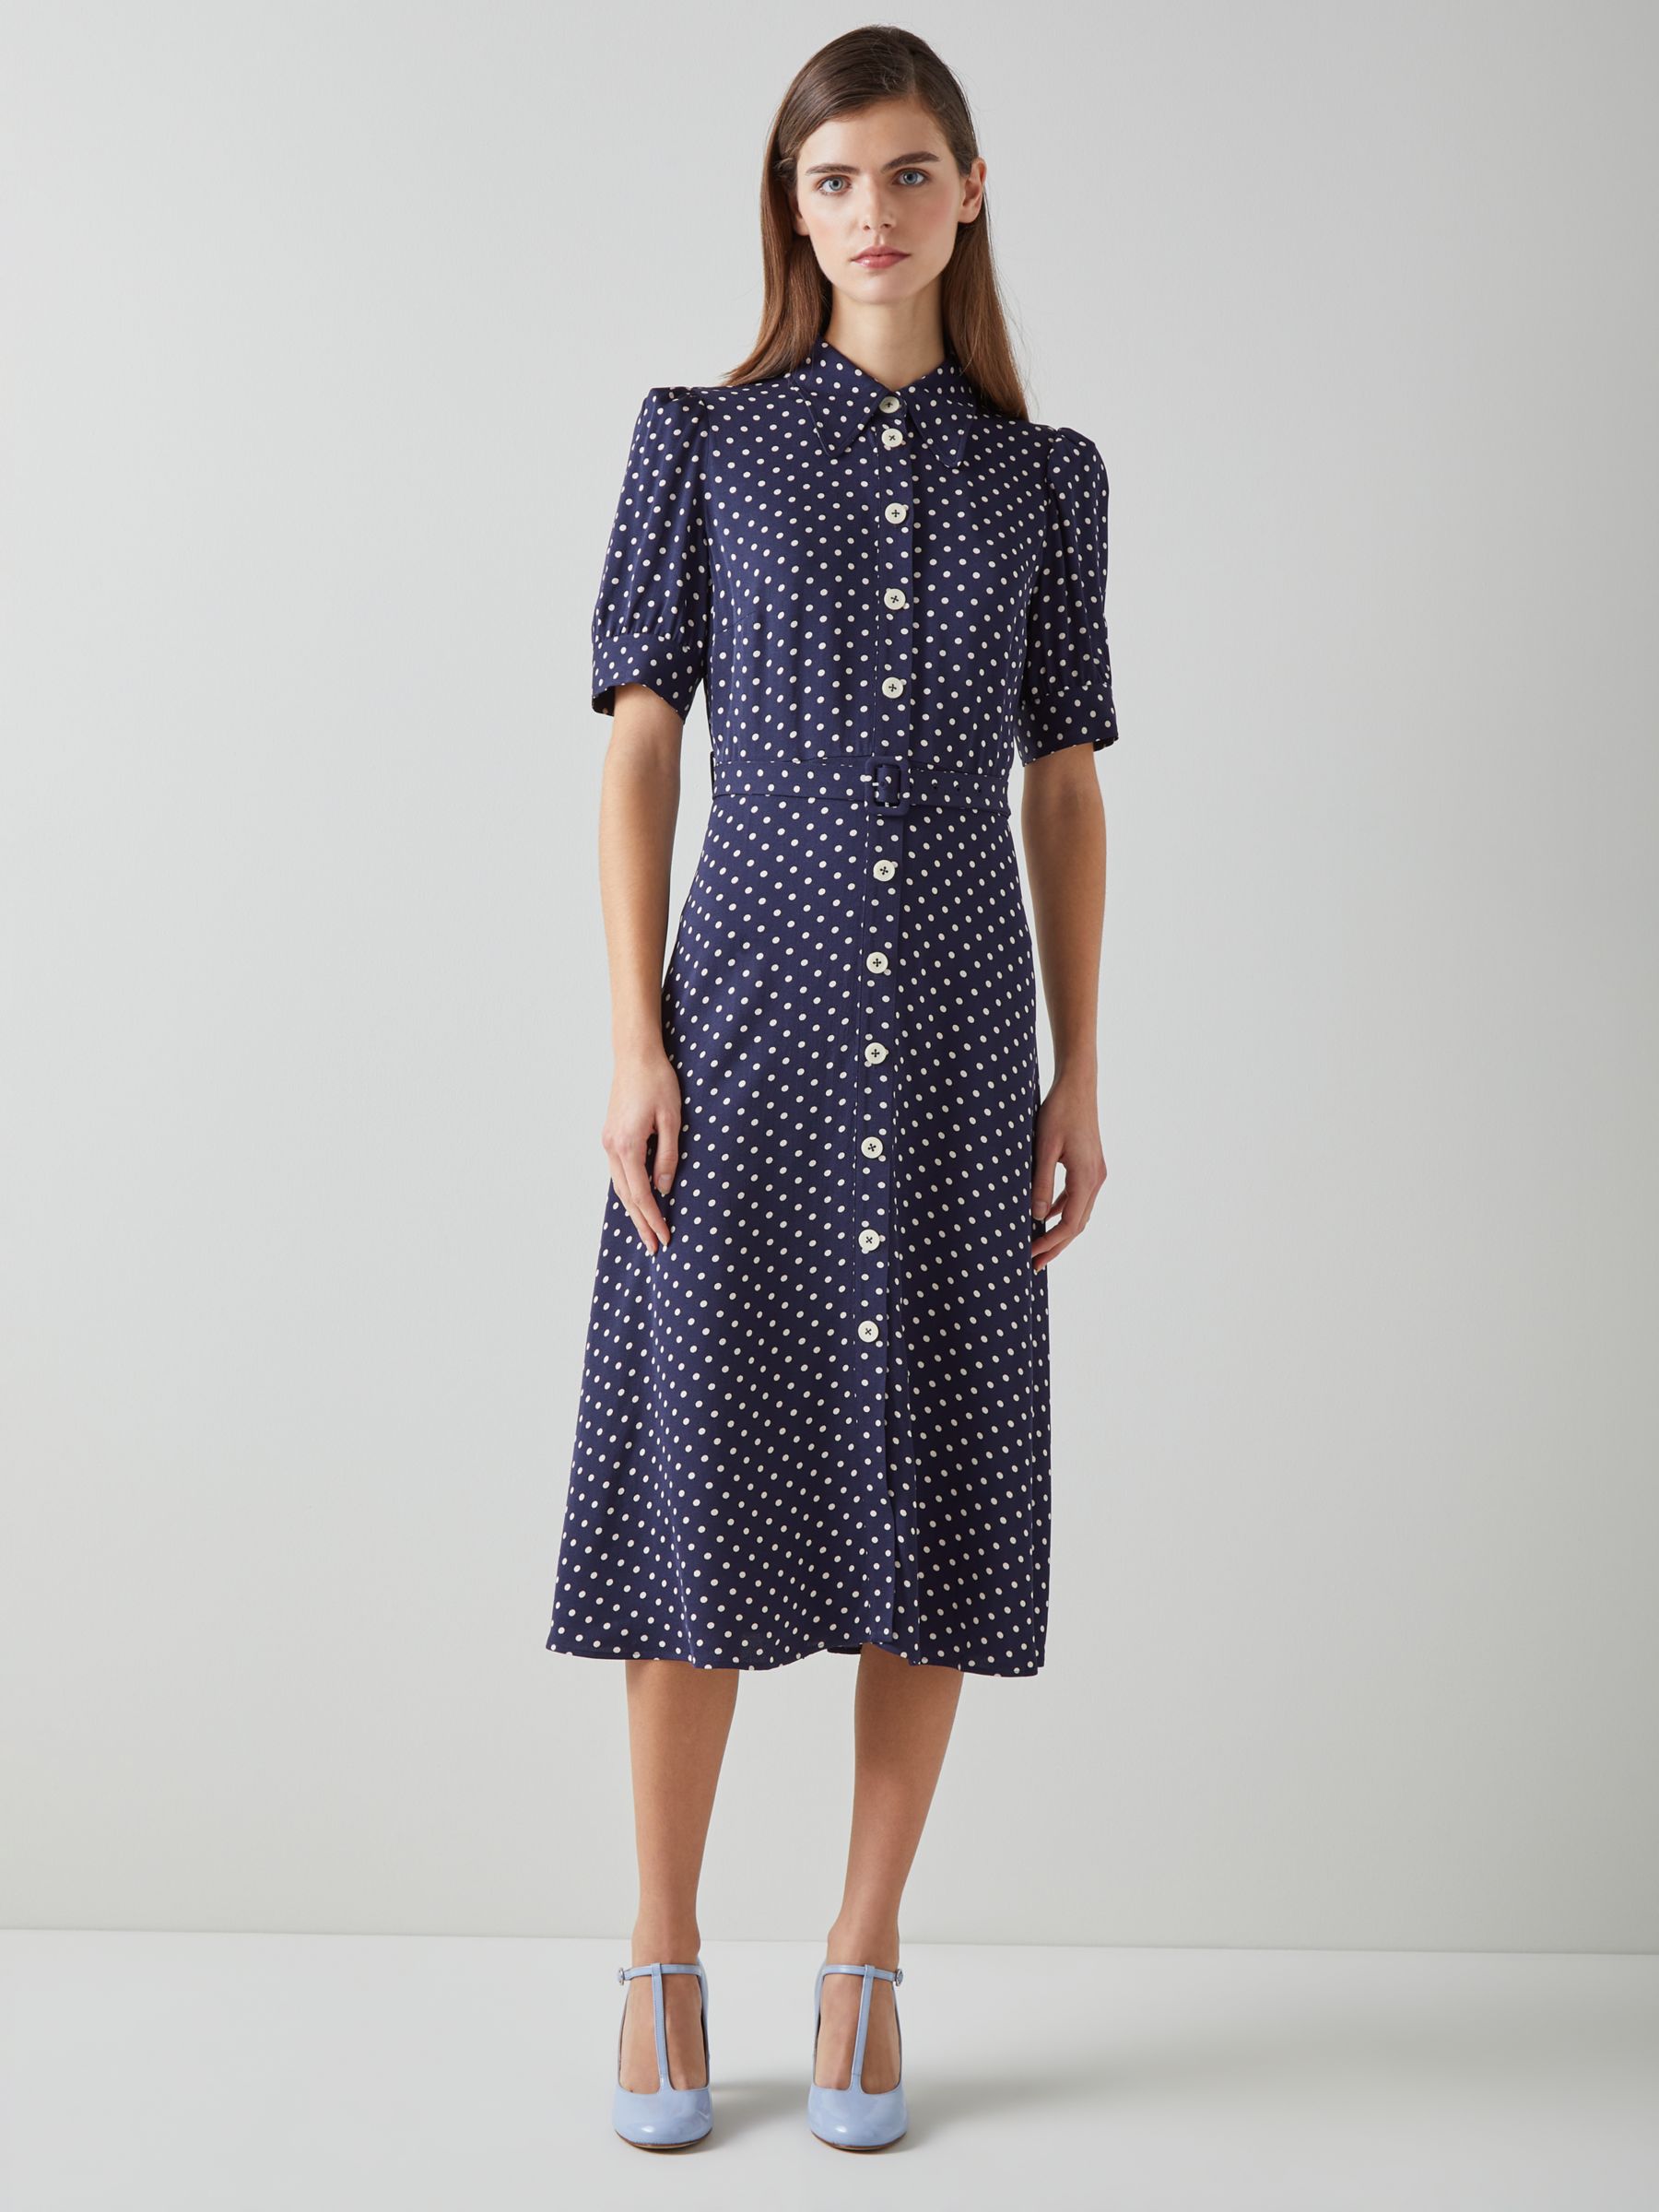 L.K.Bennett Valerie Spot Print Shirt Midi Dress, Navy/Cream, 12